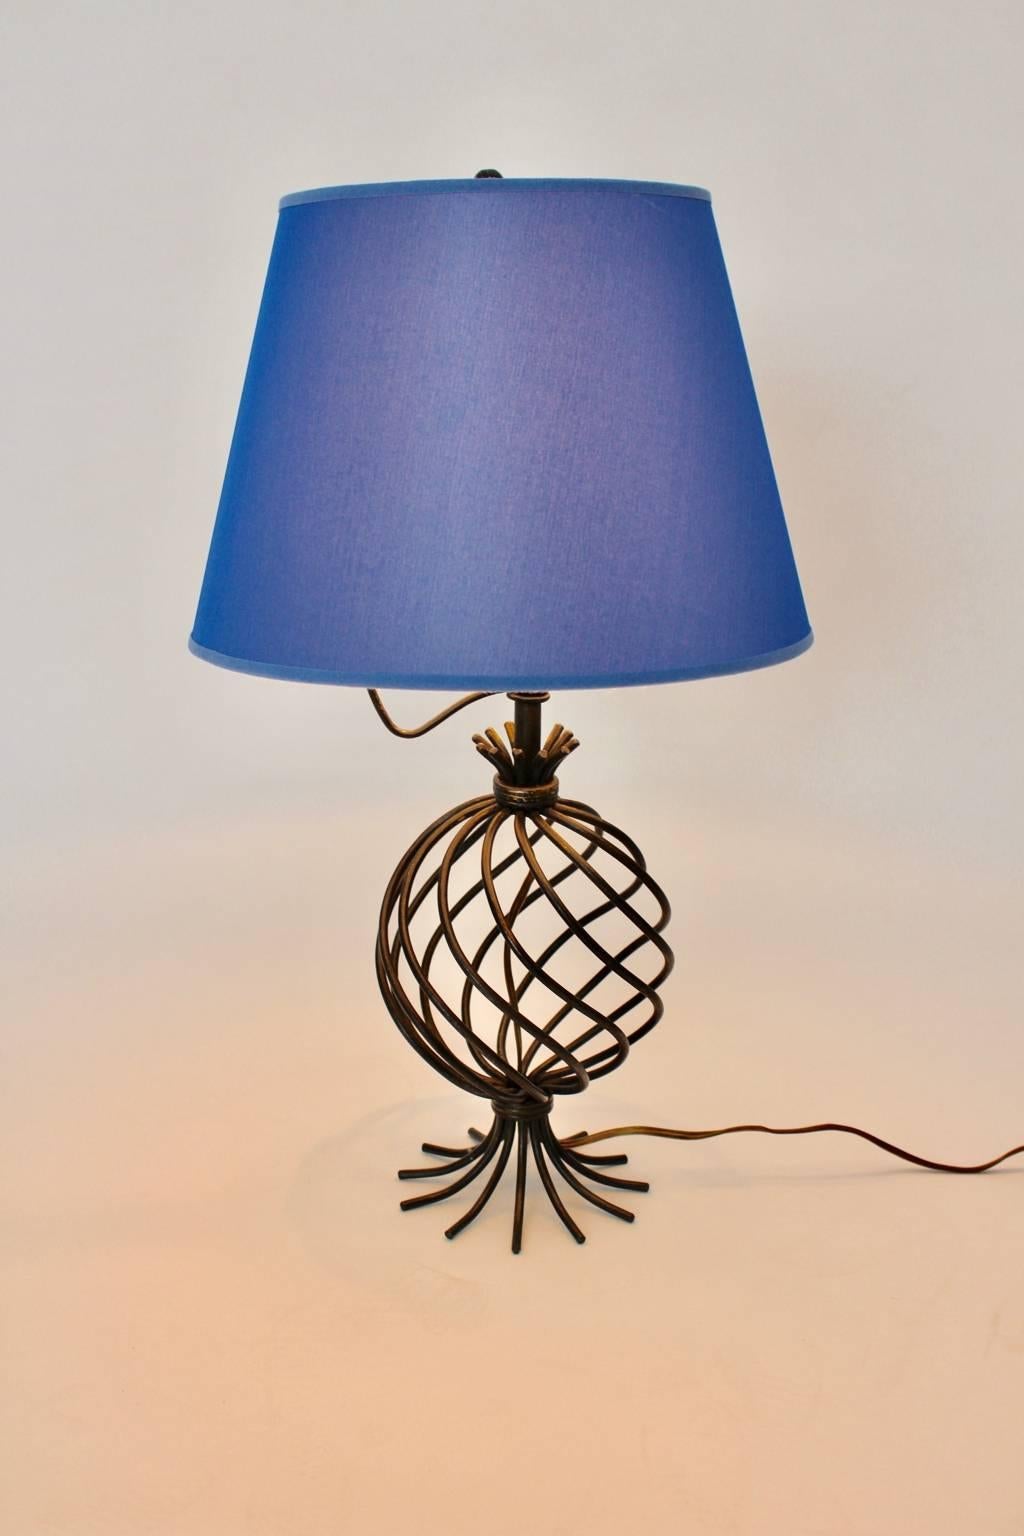 Lampe de table en métal de style jean Royere, moderne et du milieu du siècle, avec un abat-jour en tissu bleu renouvelé et une base ronde en métal laqué noir.
La lampe de table s'allume avec une ampoule E 27 et dispose d'un interrupteur